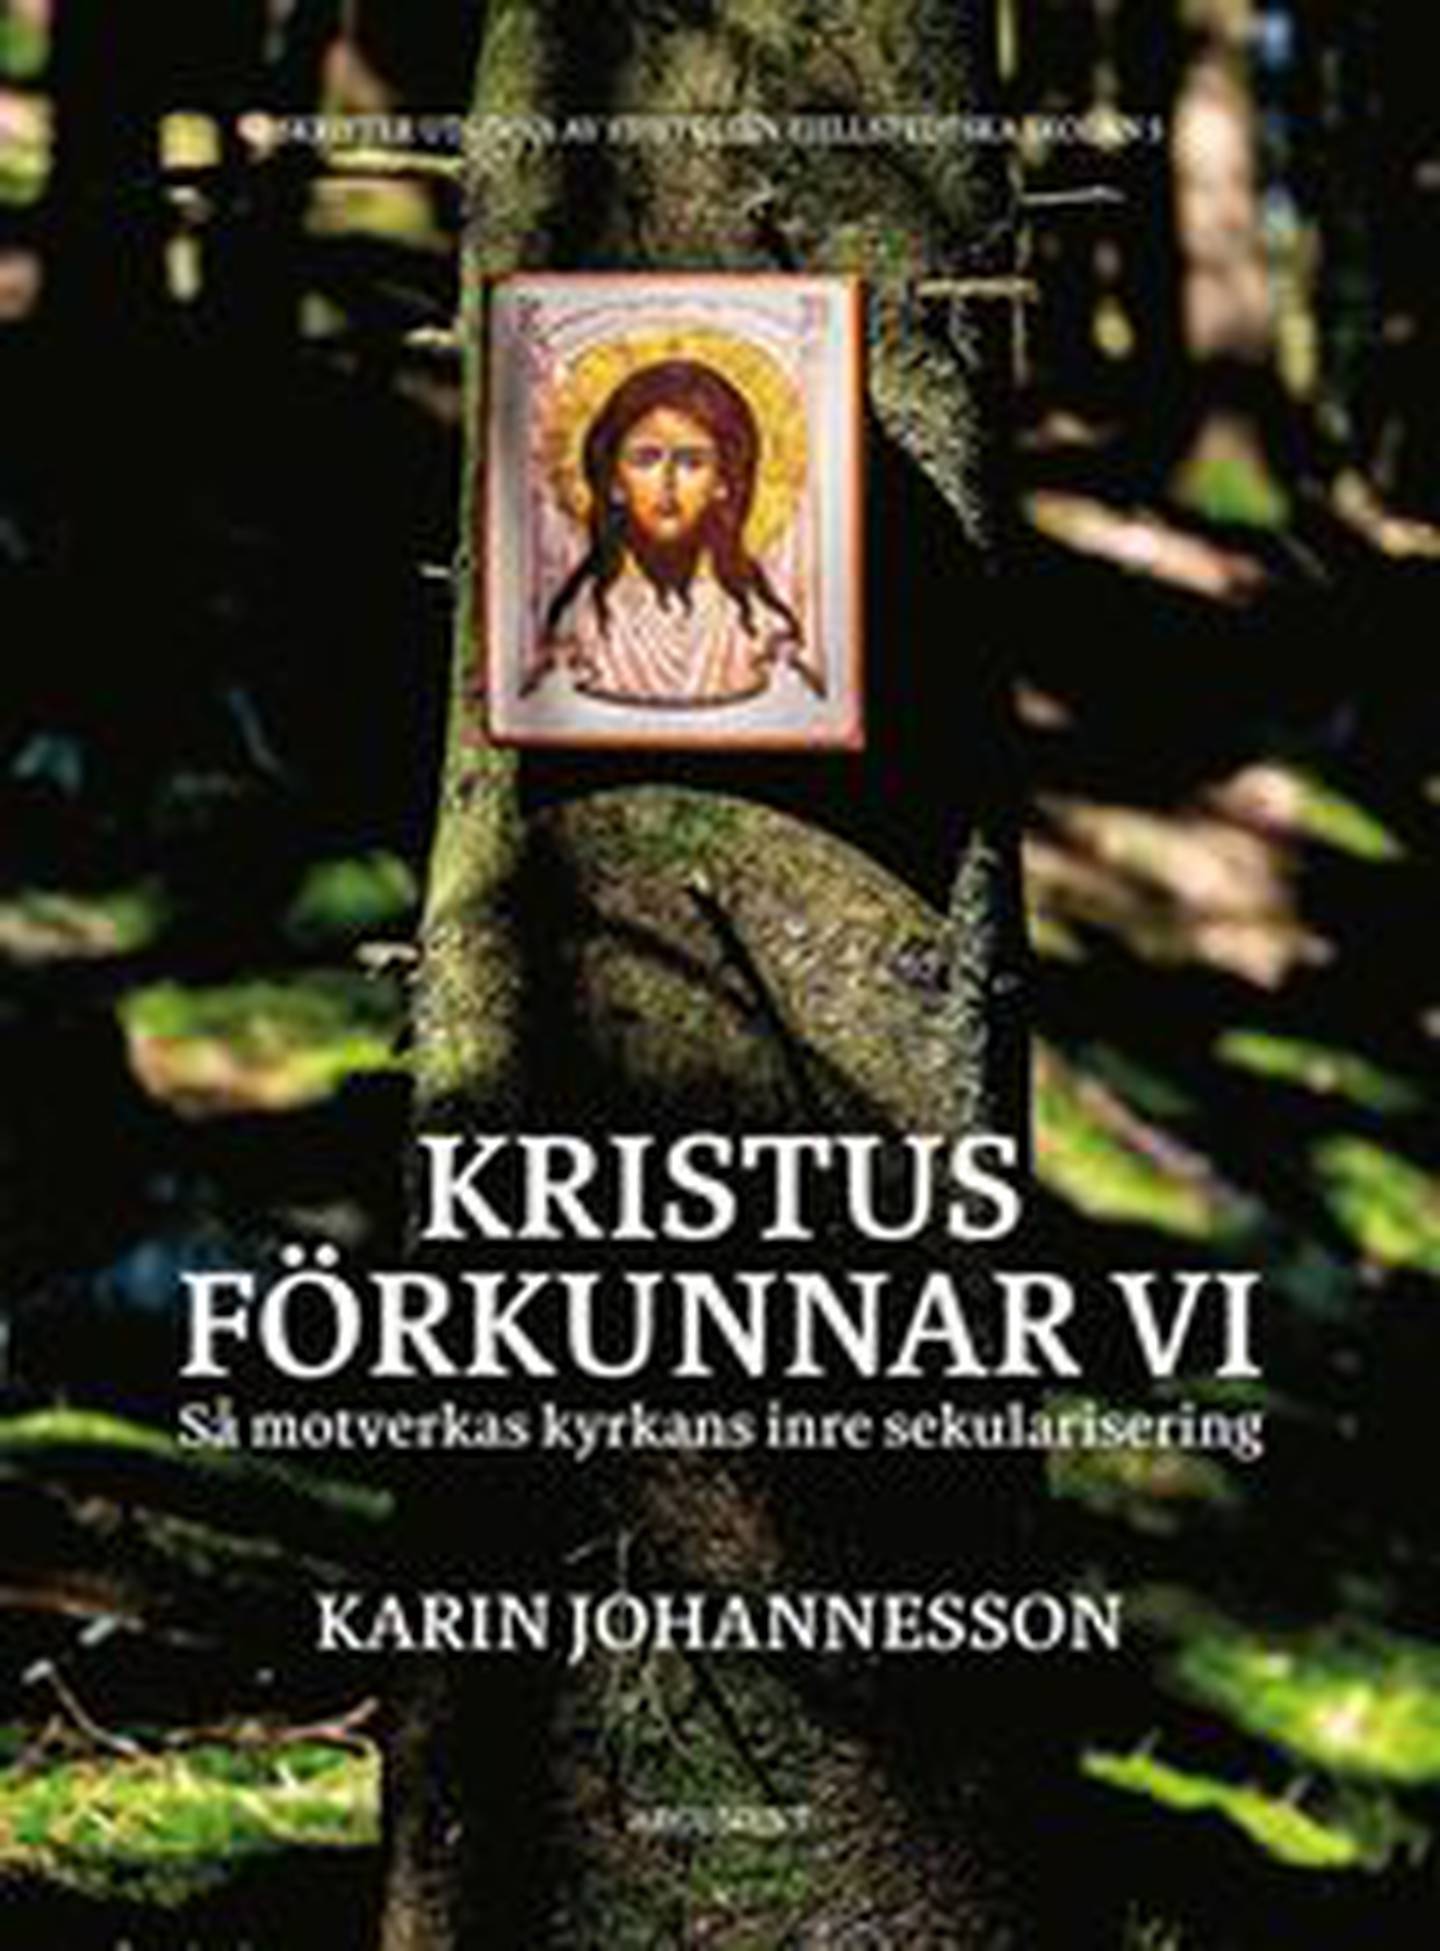 "Kristus förkunnar vi" av Karin Johannesson.